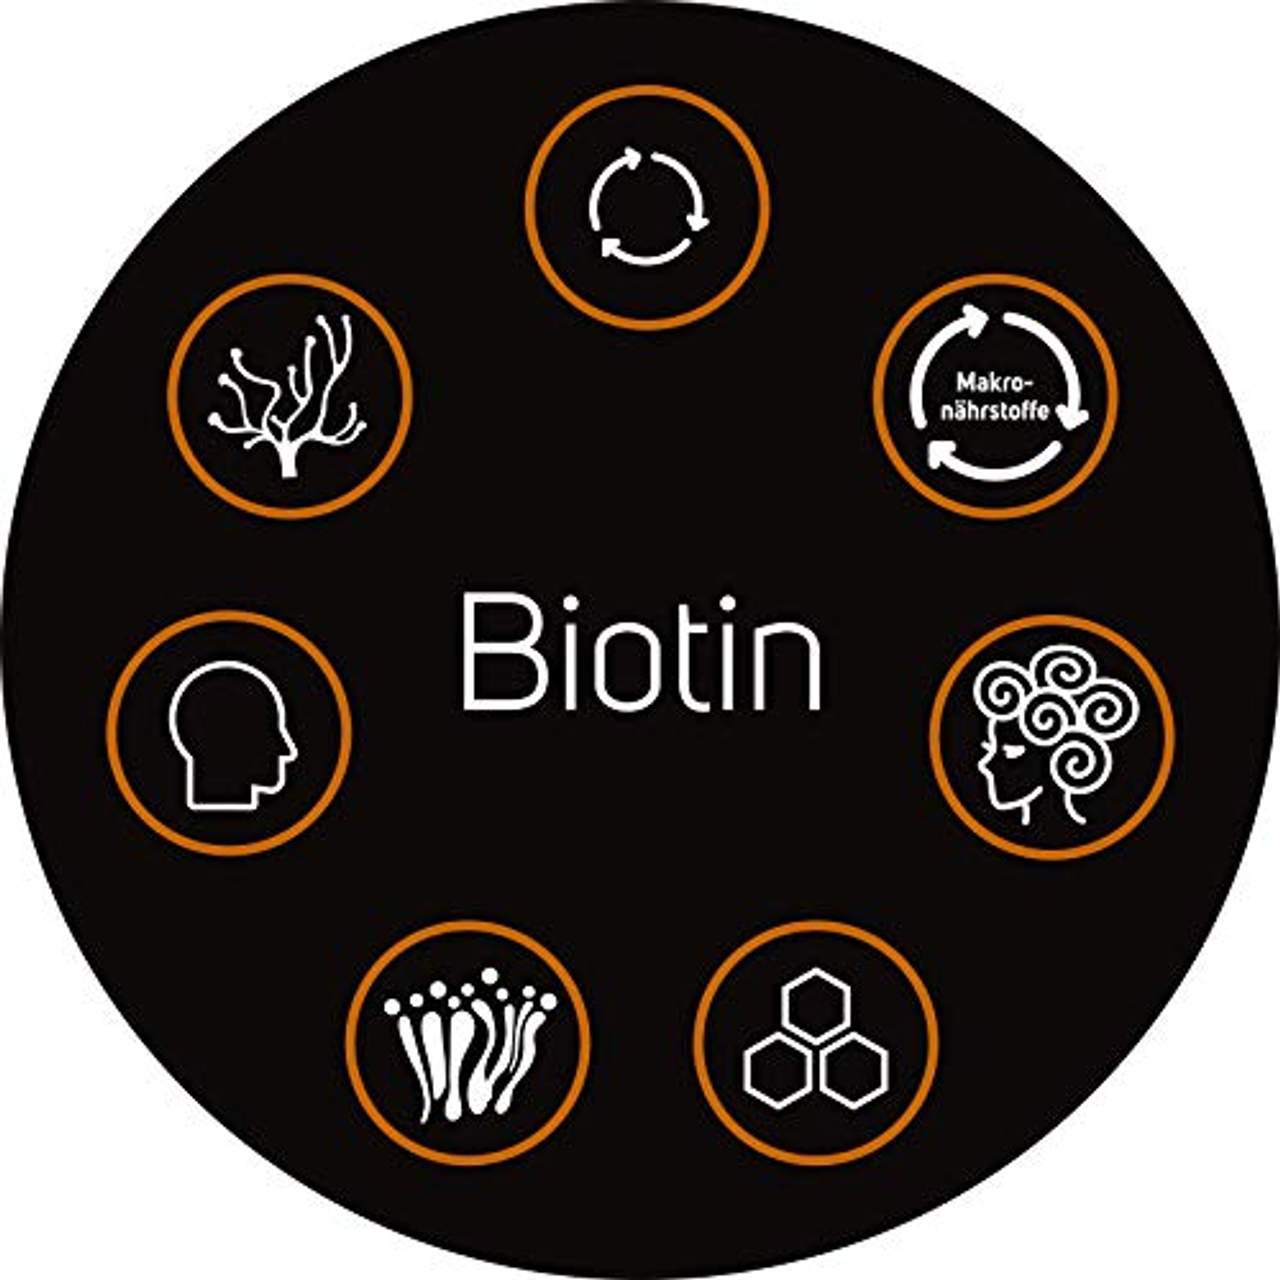 DiaPro Hochdosierte Biotin-Tabletten mit 10 mg Biotin pro Tablette Auch als Vitamin B7 bzw. Vitamin H bekannt 365 Stück